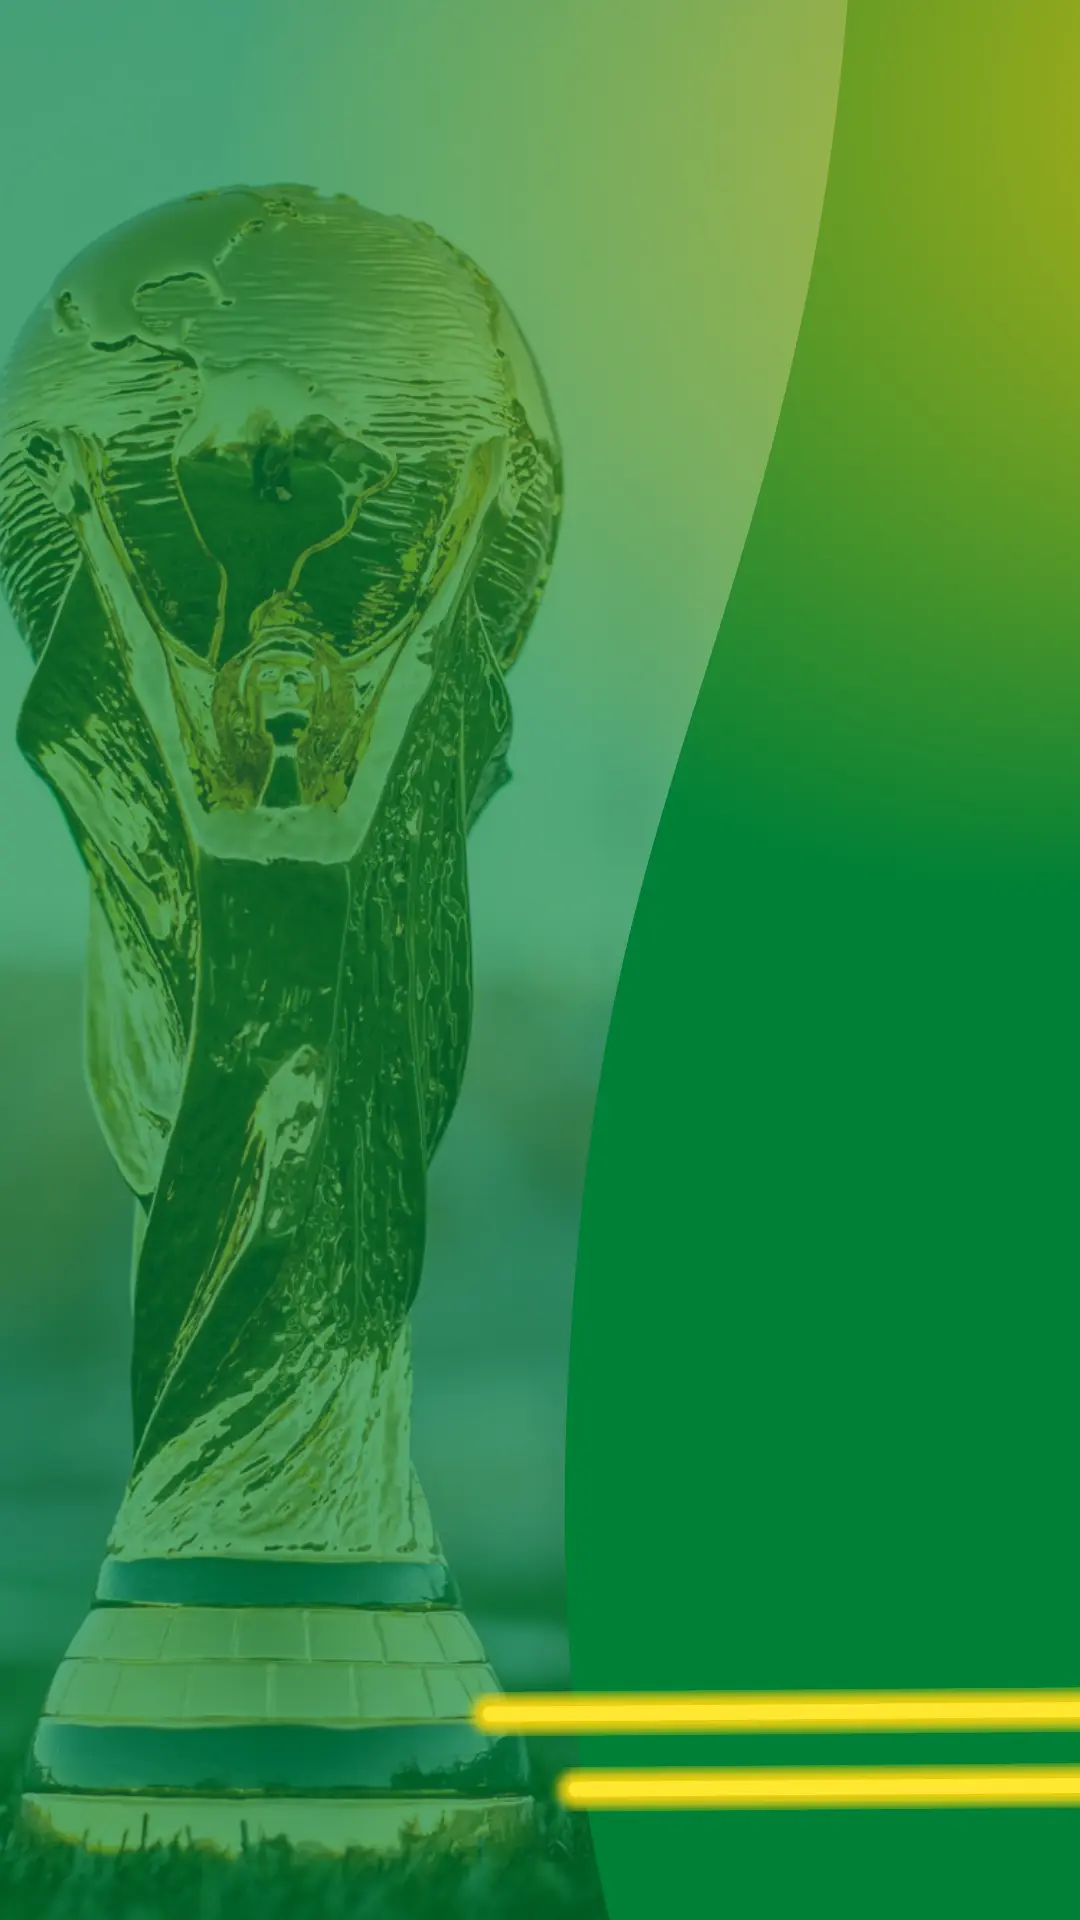 Copa do mundo 2026: planeje sua viagem para ver os jogos - Blog Meu  Patrimônio